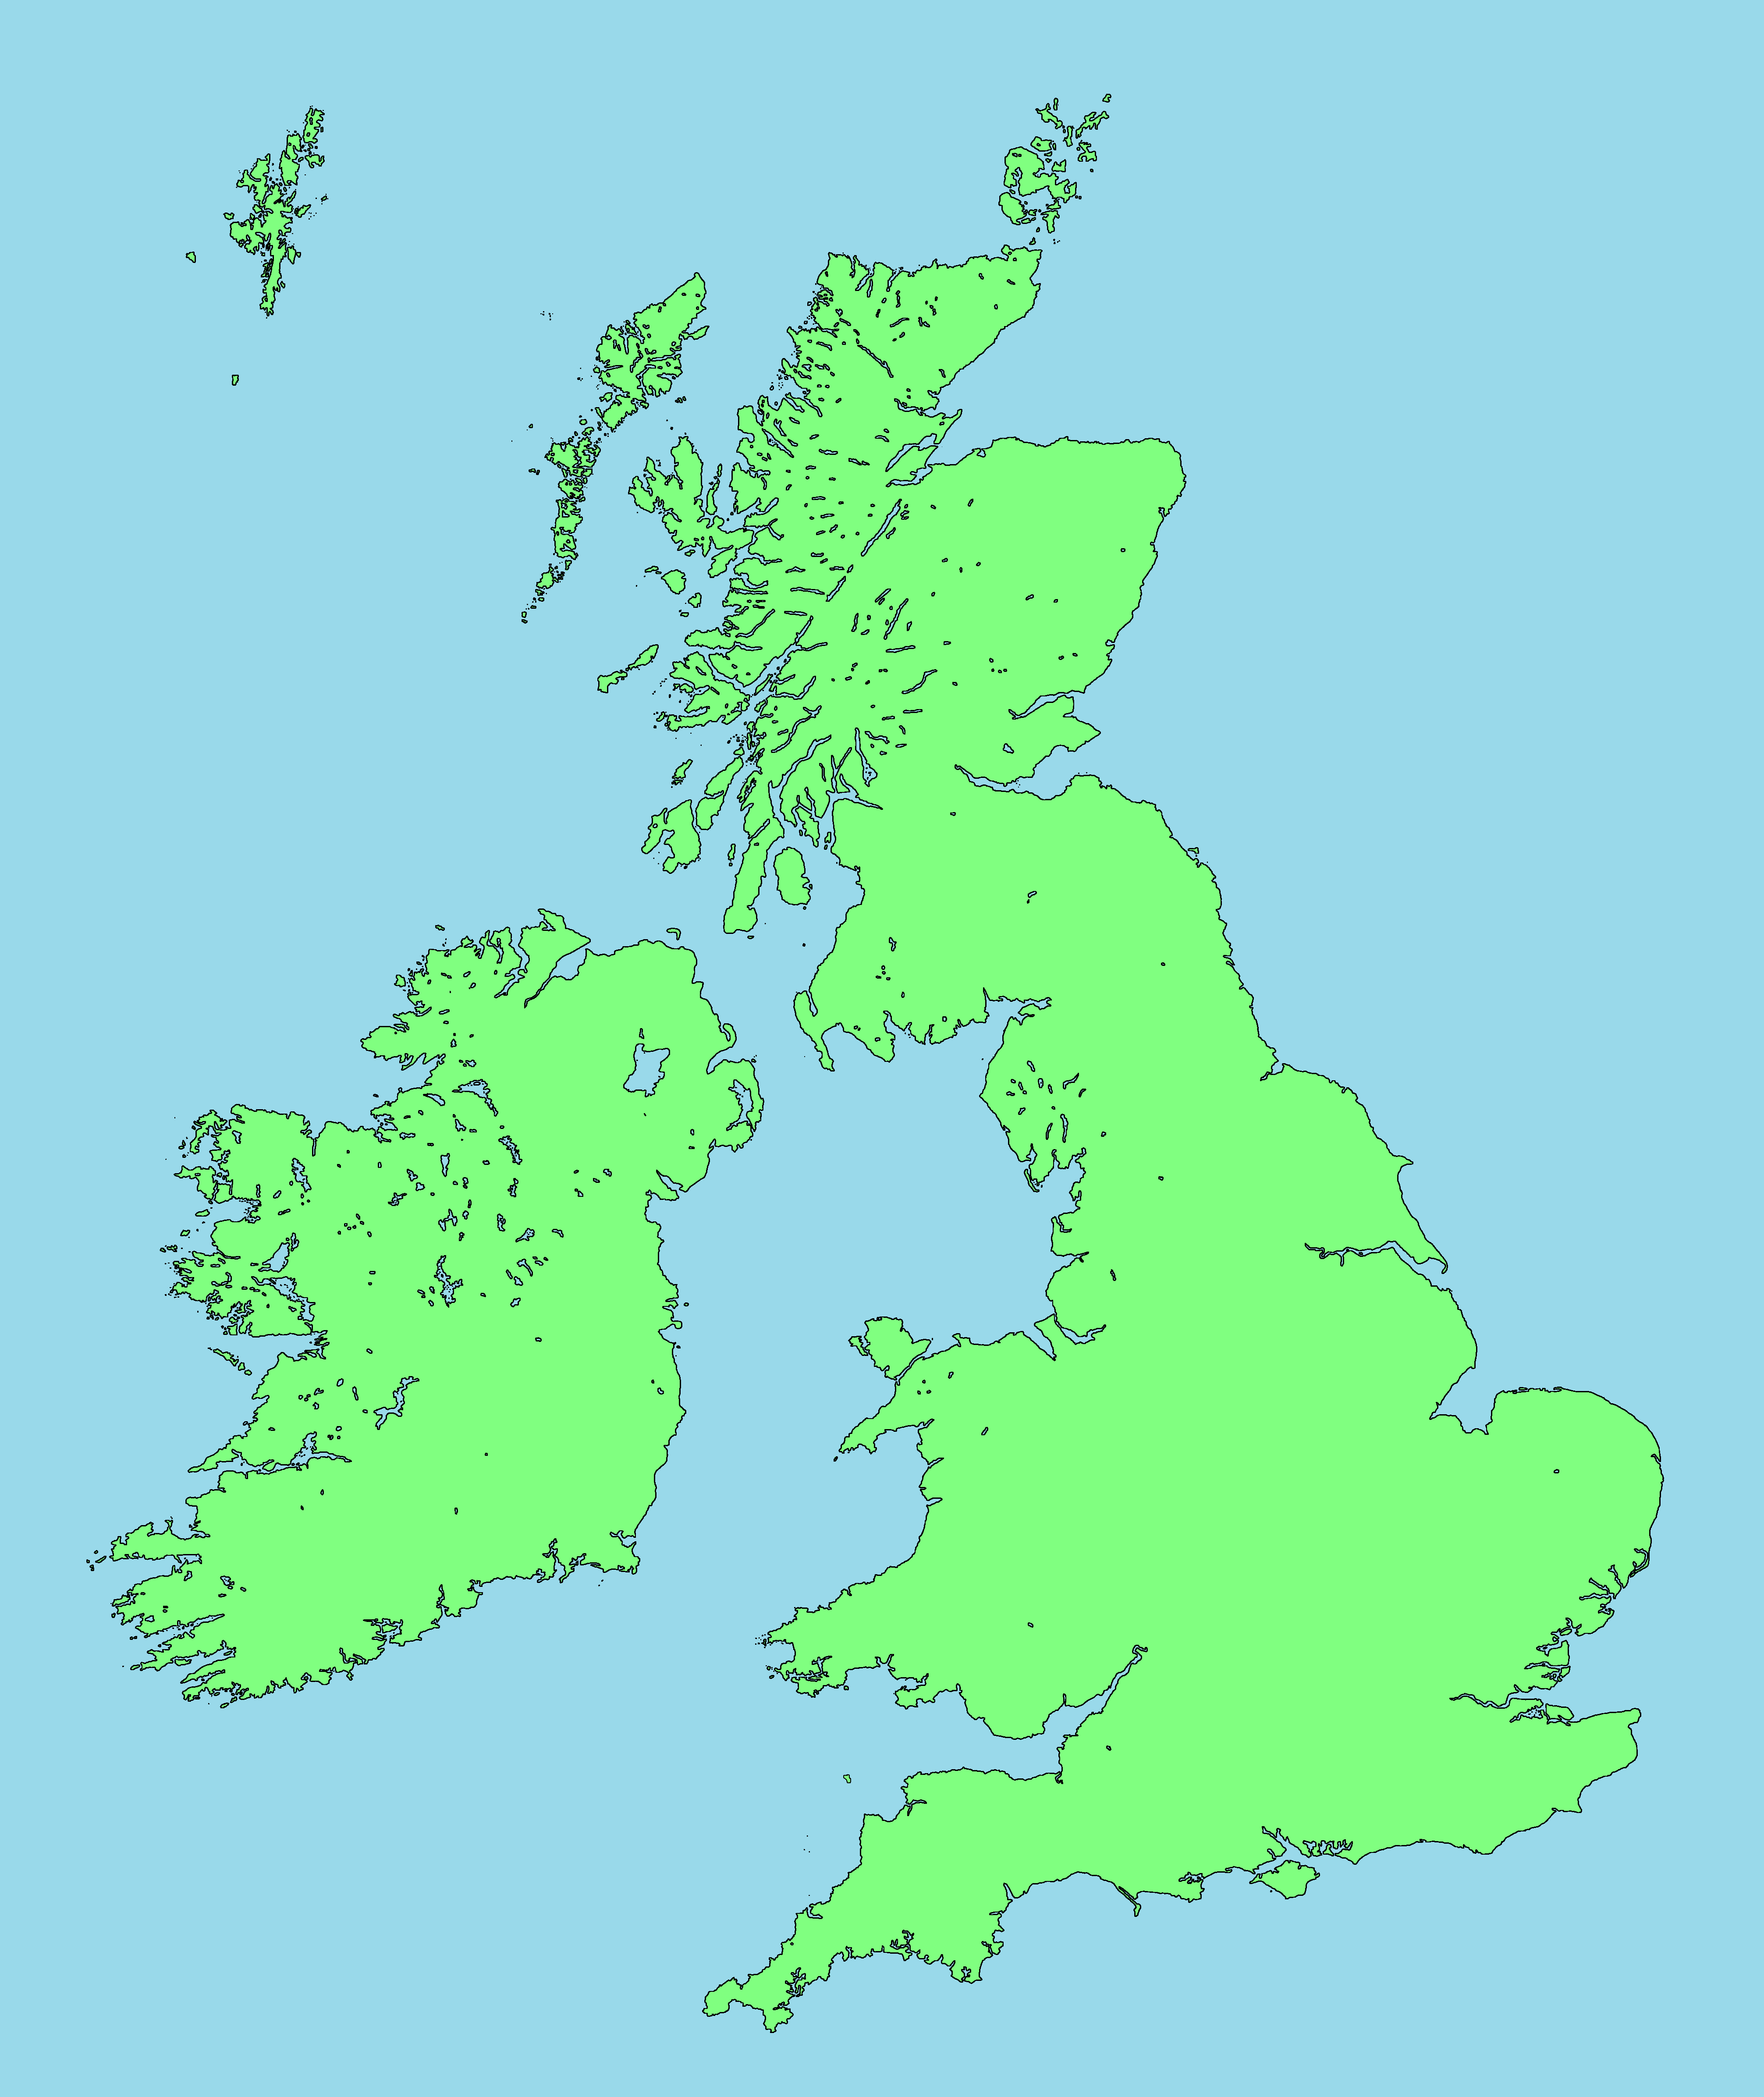 Остров Великобритания на карте. Остров Британия на карте. Карта Британии и британских островов. Острова Англии на карте. Great britain is an island